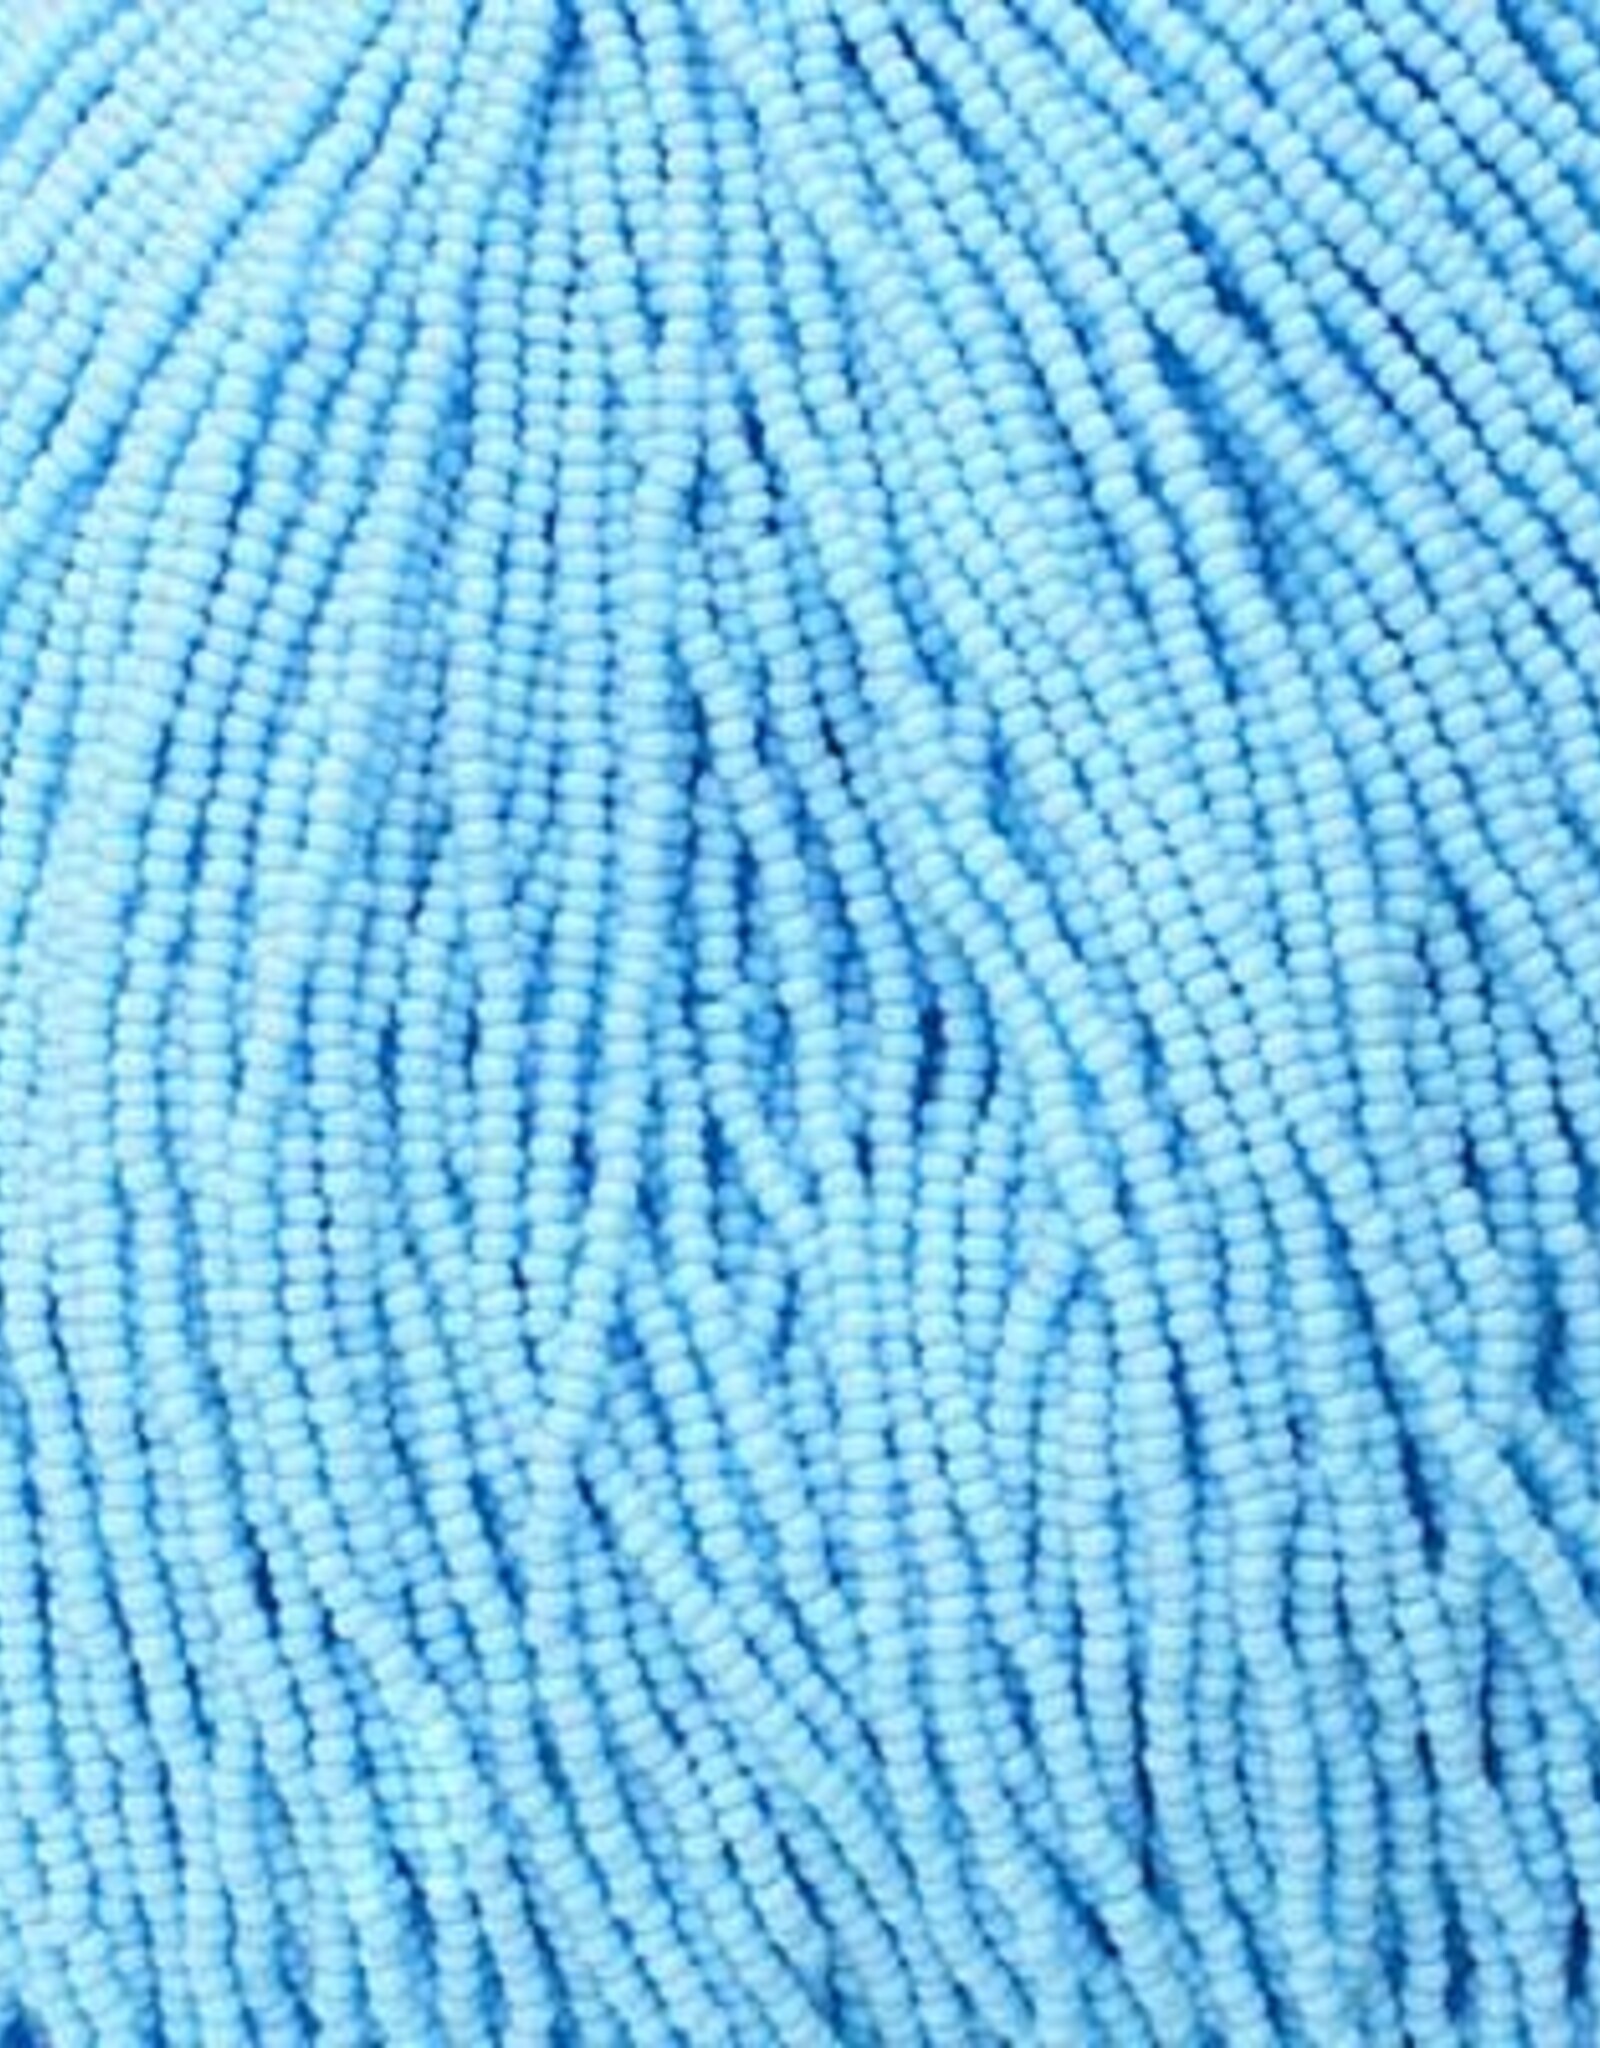 Preciosa Czech Seed Bead Seed Beads 11/0 Op. Light Blue Strung  34907